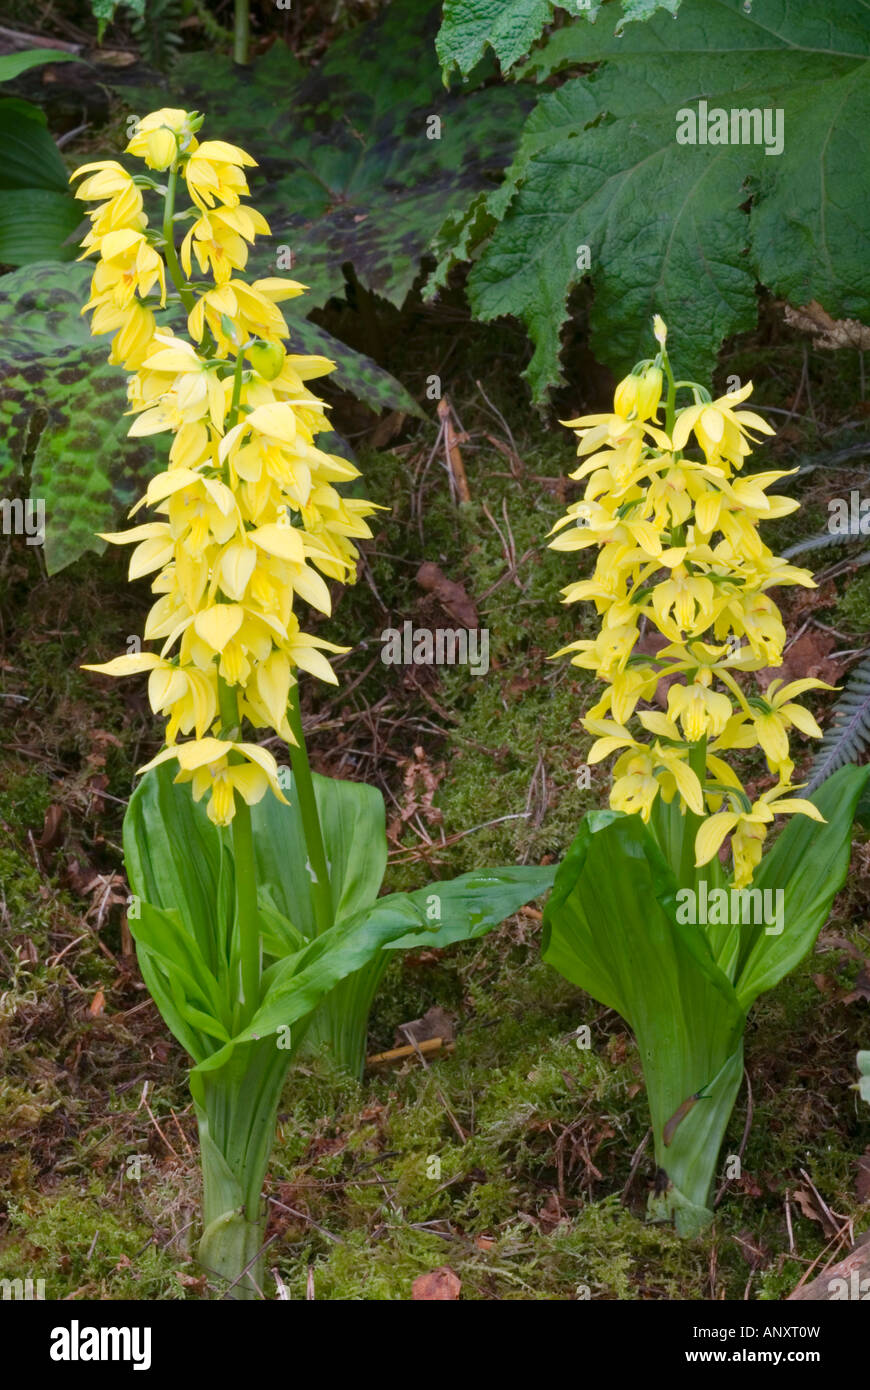 Calanthe sieboldii winterharte Orchideen Gelb Ebine in Boden, Pflanze Gewohnheit in Garten Stockfoto